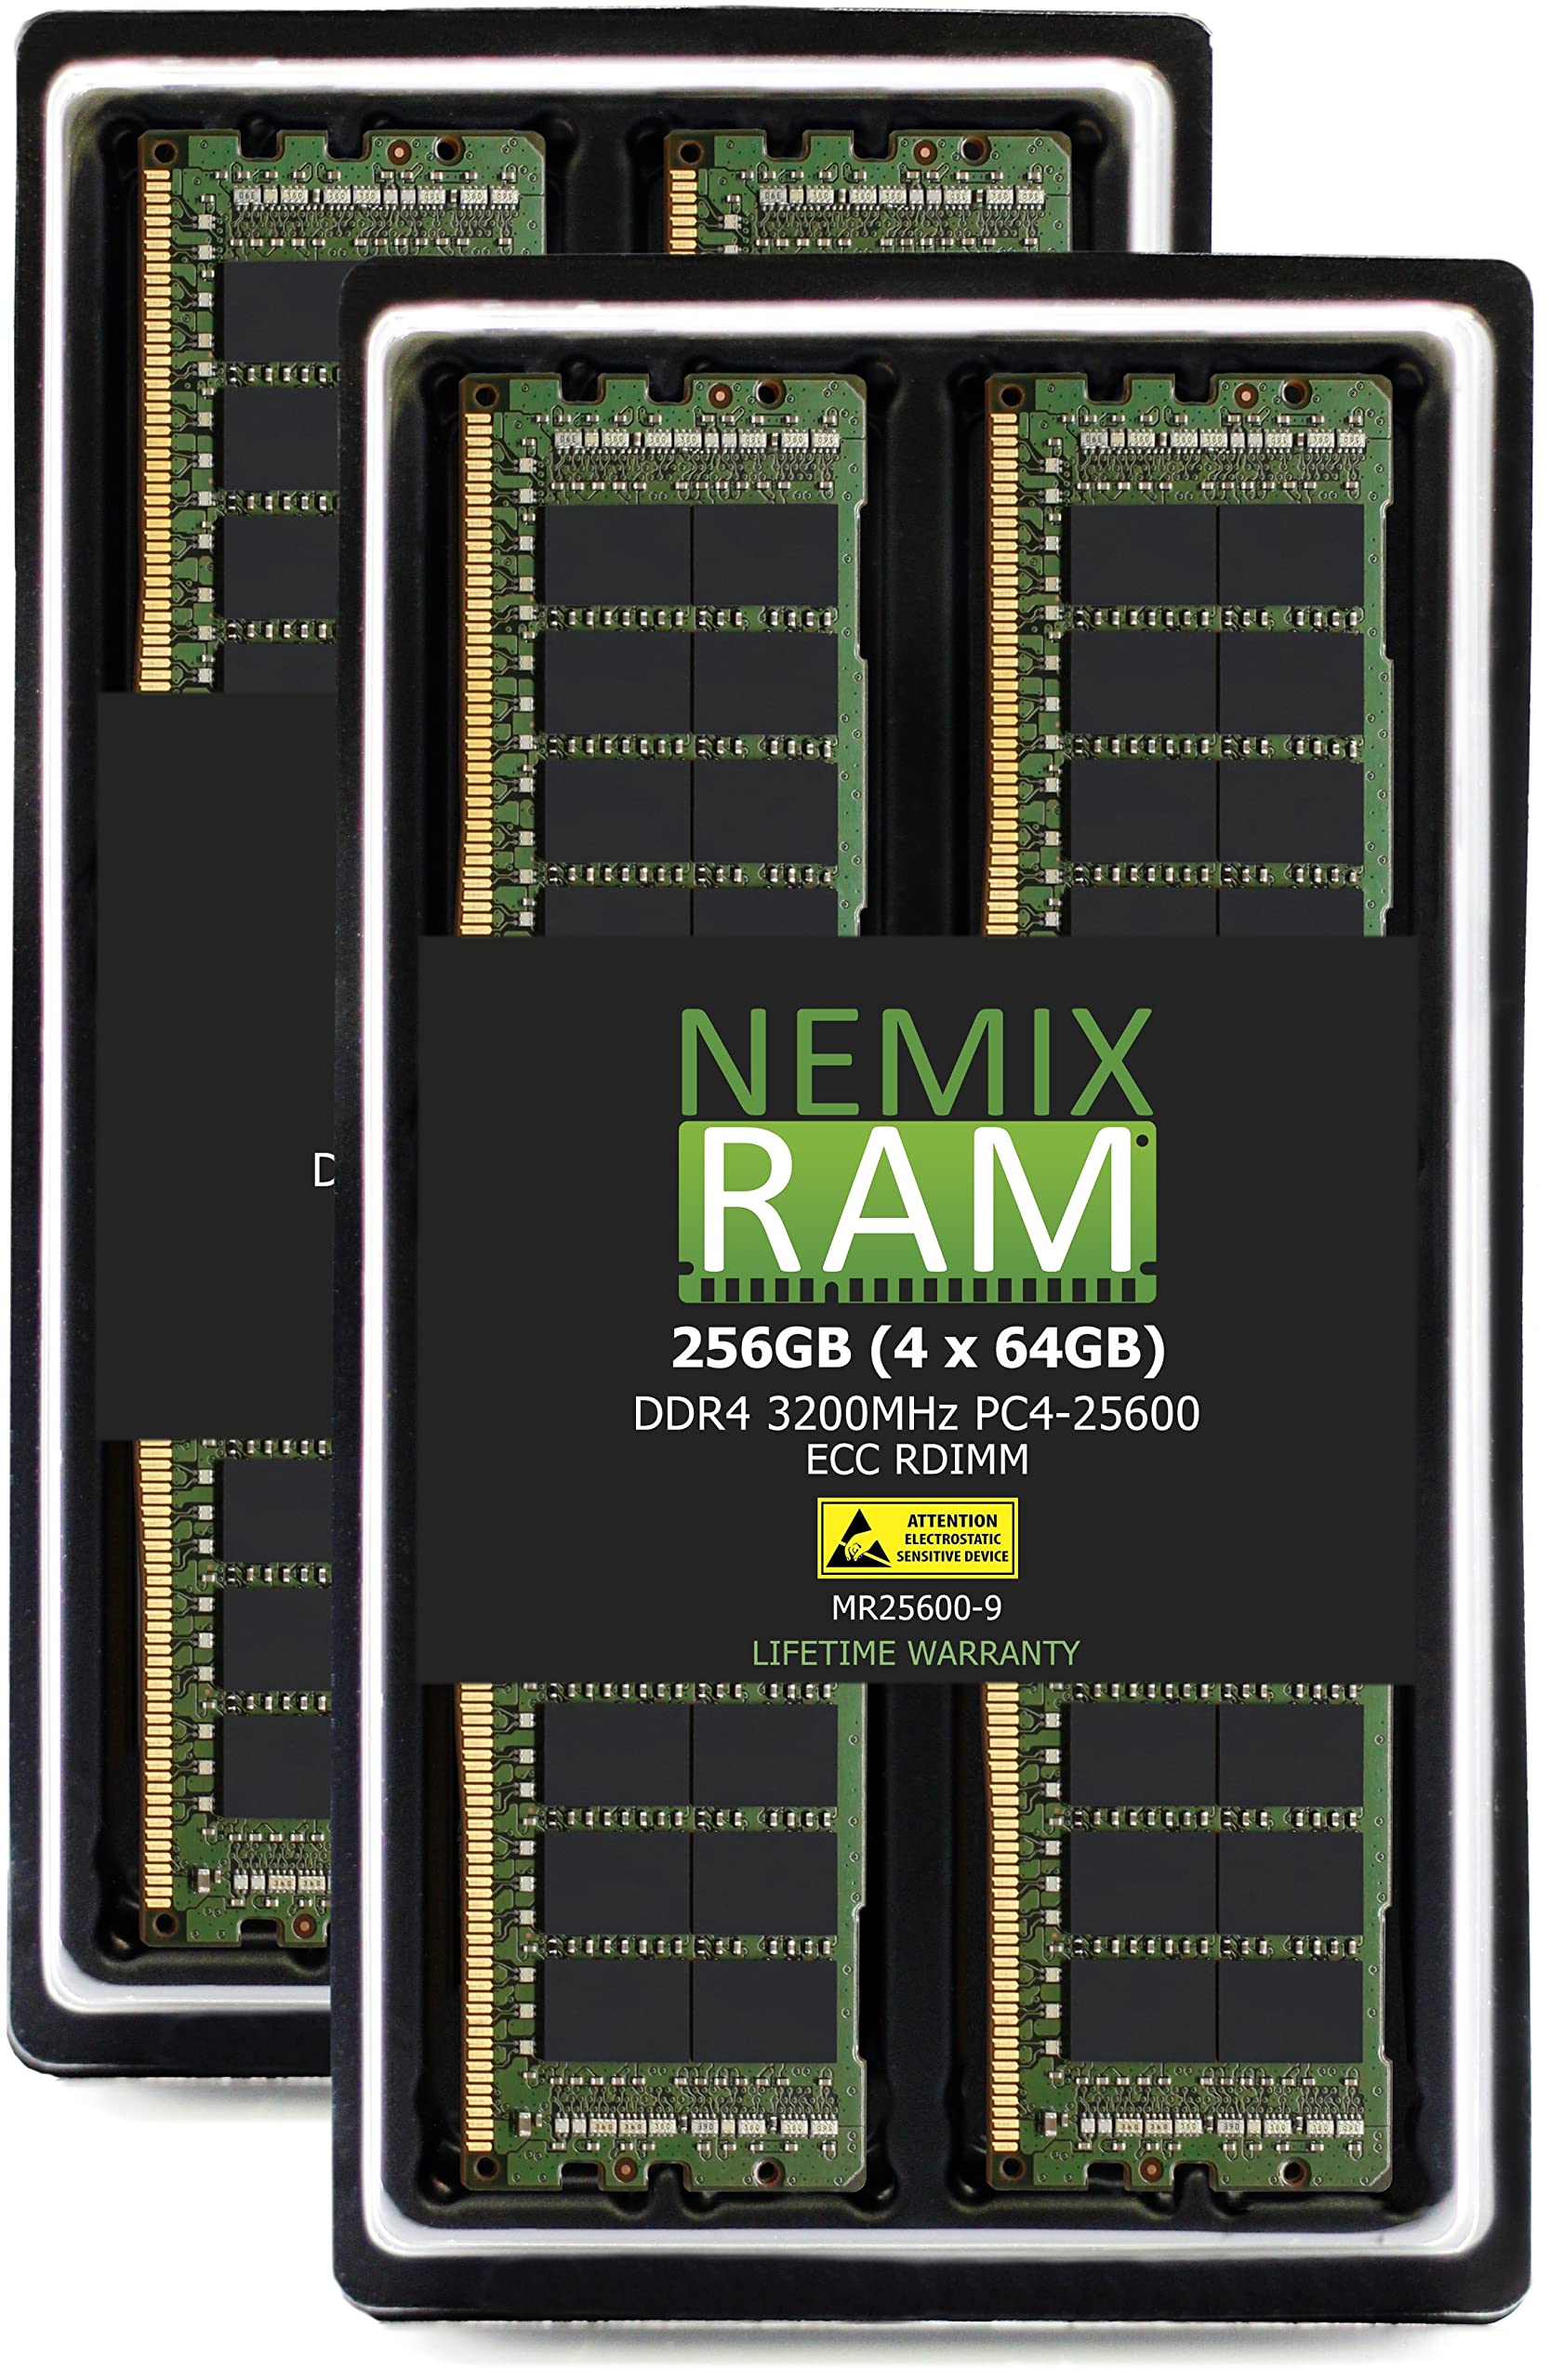 NEMIX RAM 256GB 4x64GB DDR4-3200 PC4-25600 ECC RDIMM レジスタードサーバーメモリアップグレード Dell Powe